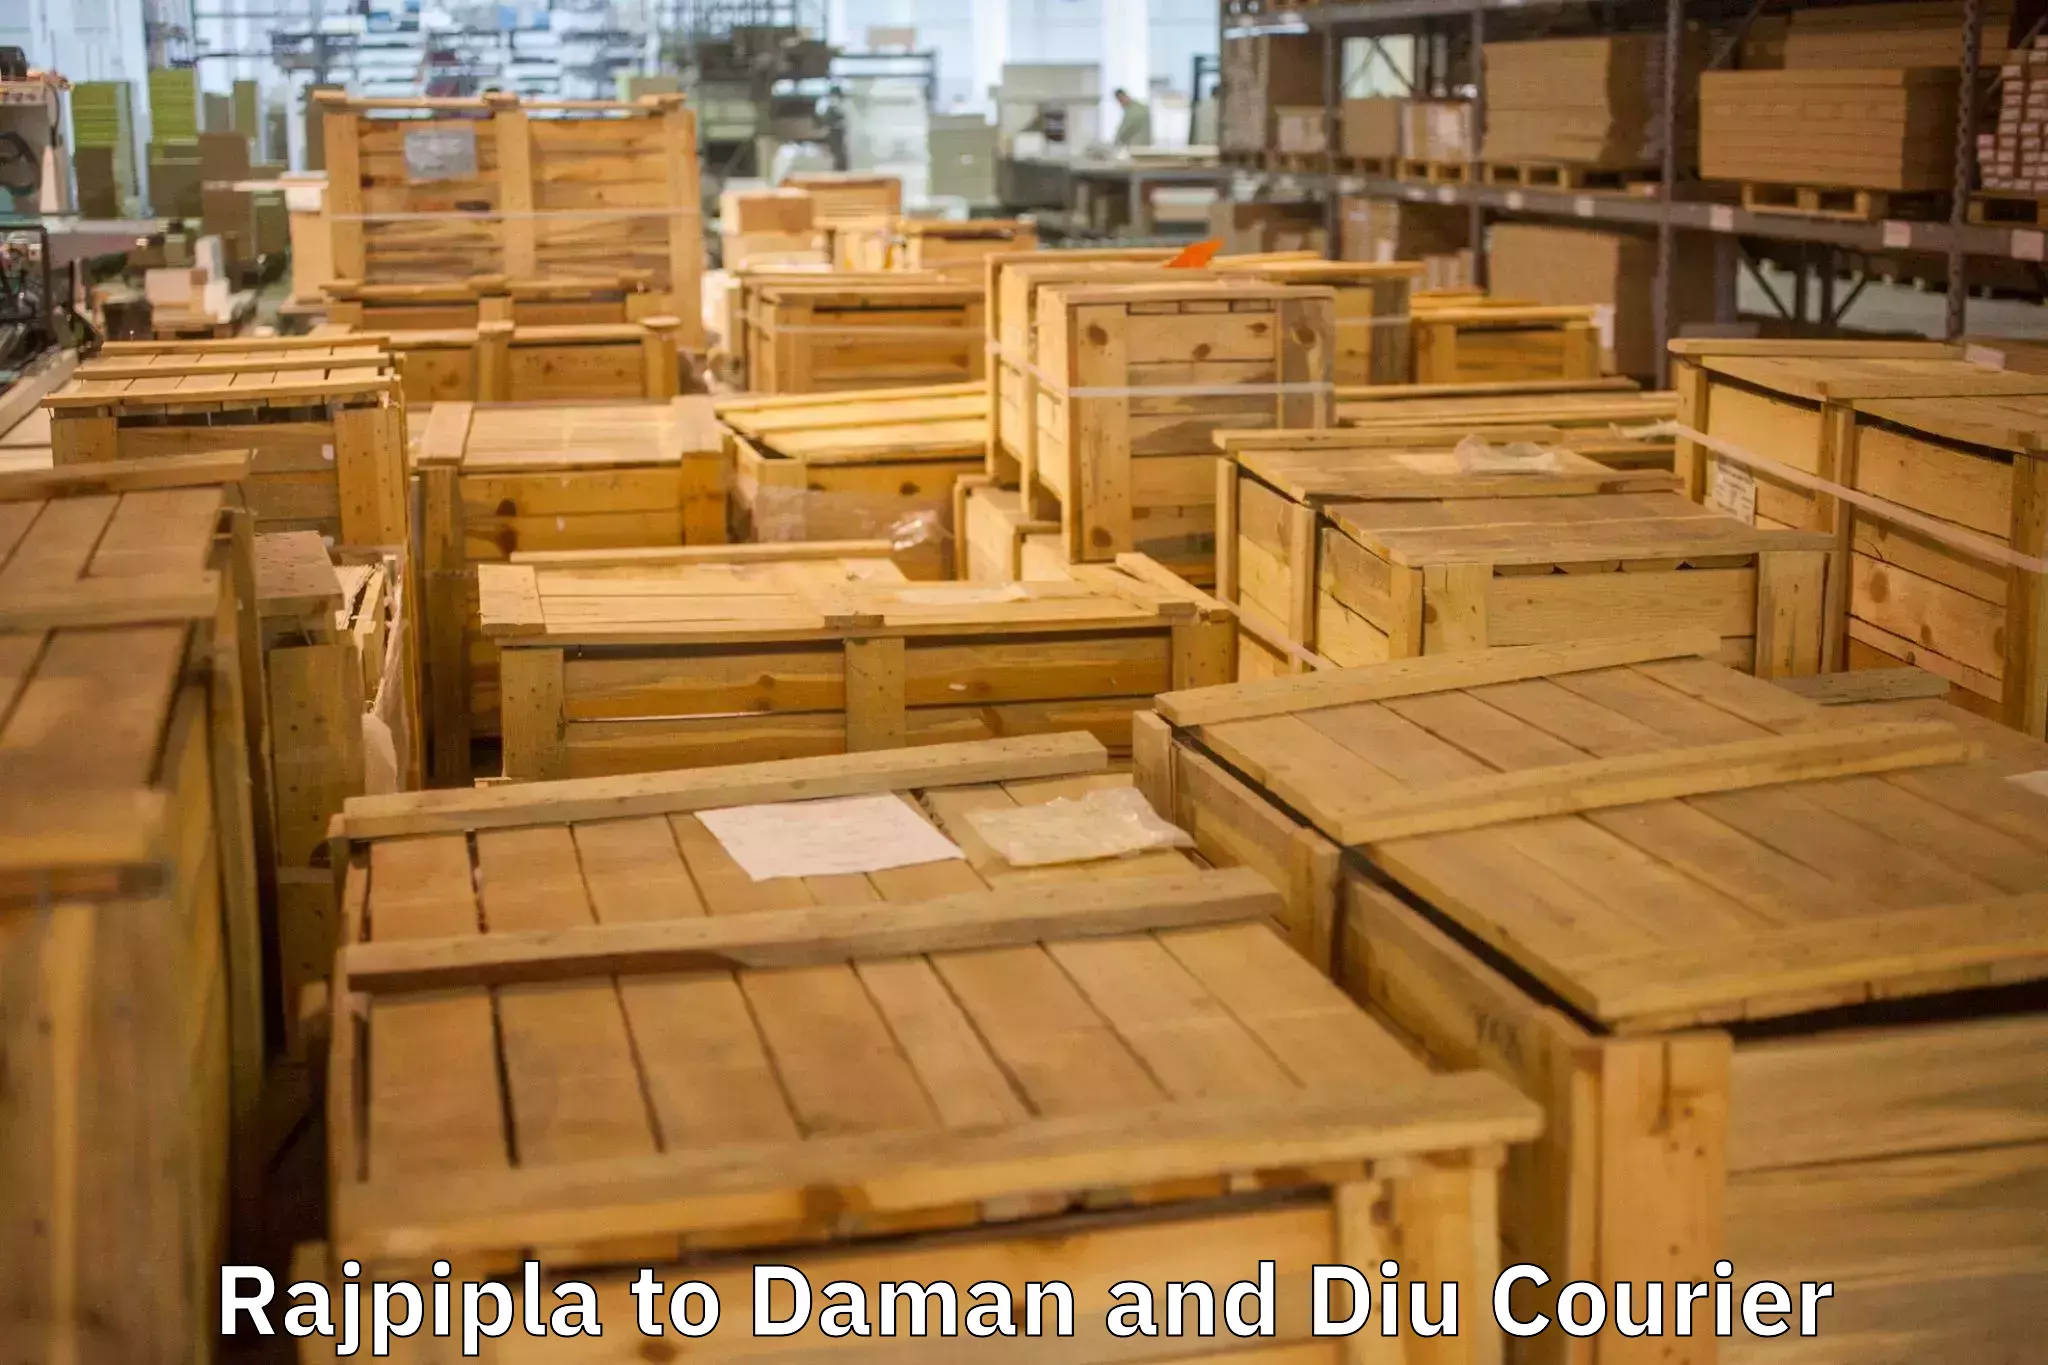 Expert furniture movers Rajpipla to Diu